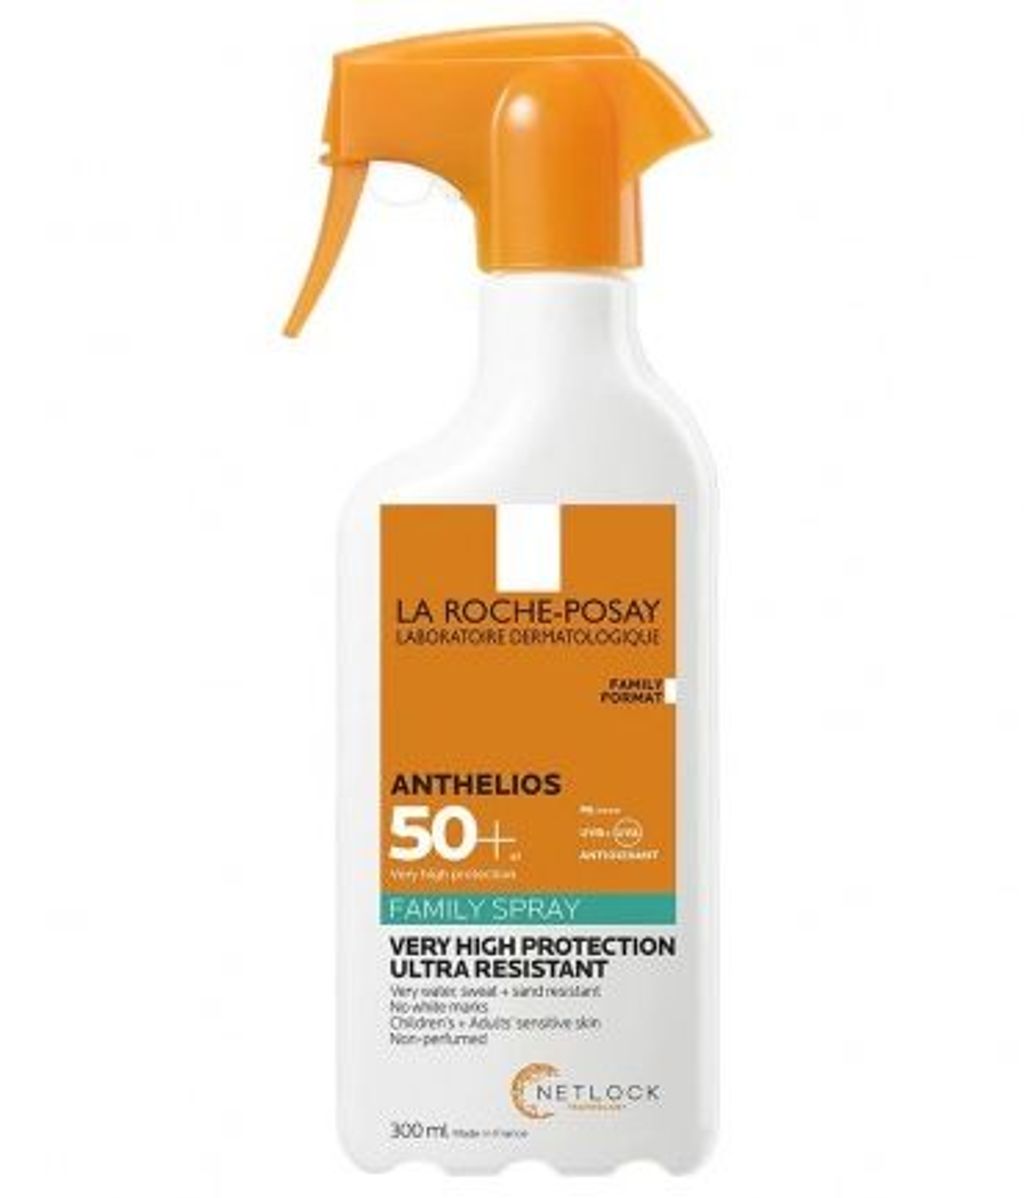 La Roche-Posay Family Spray 50+